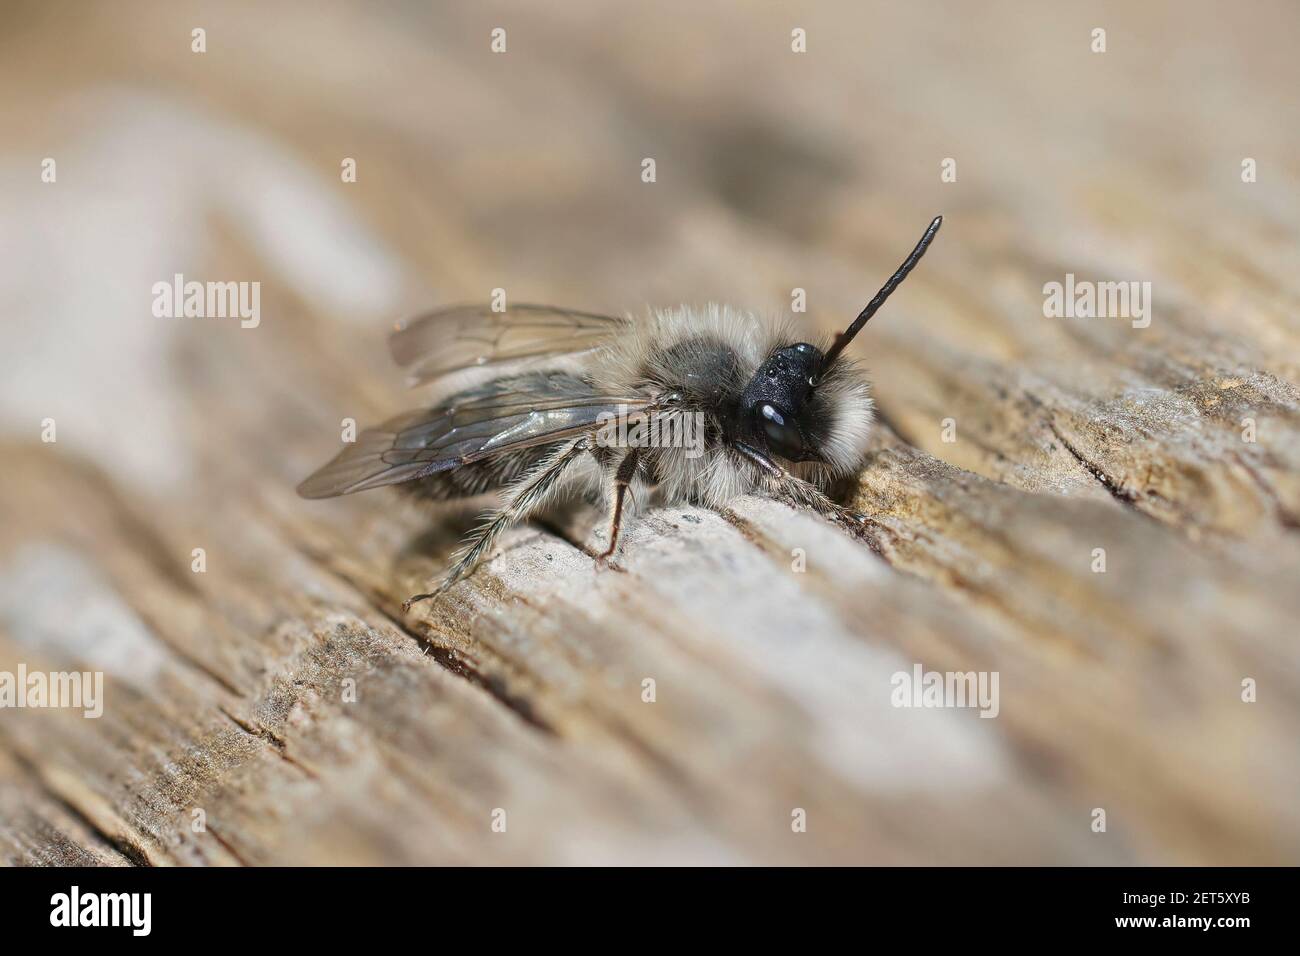 Nahaufnahme einer männlichen Clarke's Mining Biene, Andrena clarkella, die sich in hellem Sonnenlicht auf einem Holzmast erwärmt Stockfoto